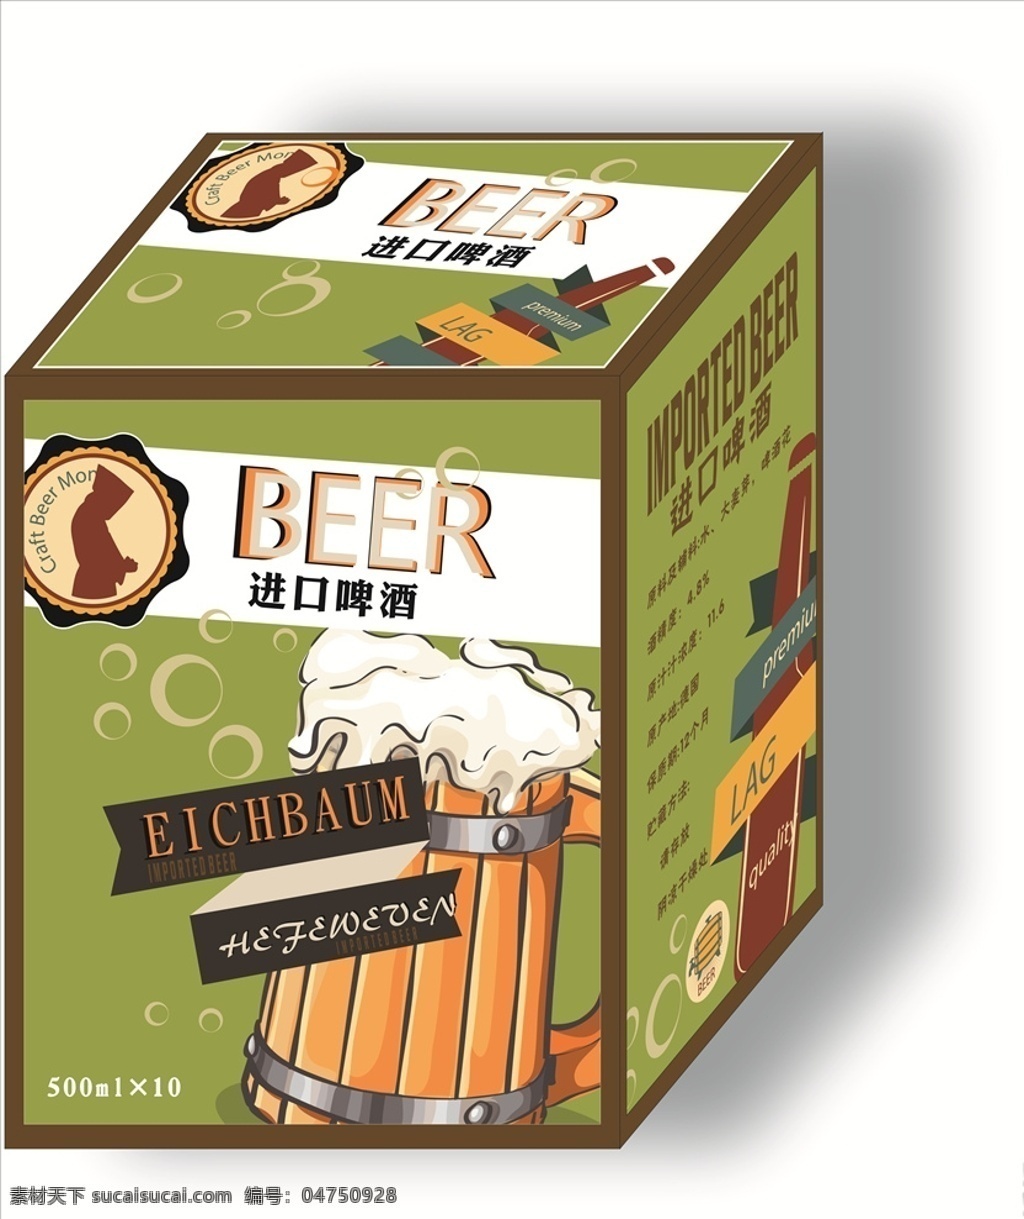 啤酒箱 啤酒包装 进口啤酒 啤酒 绿色 食品 包装设计